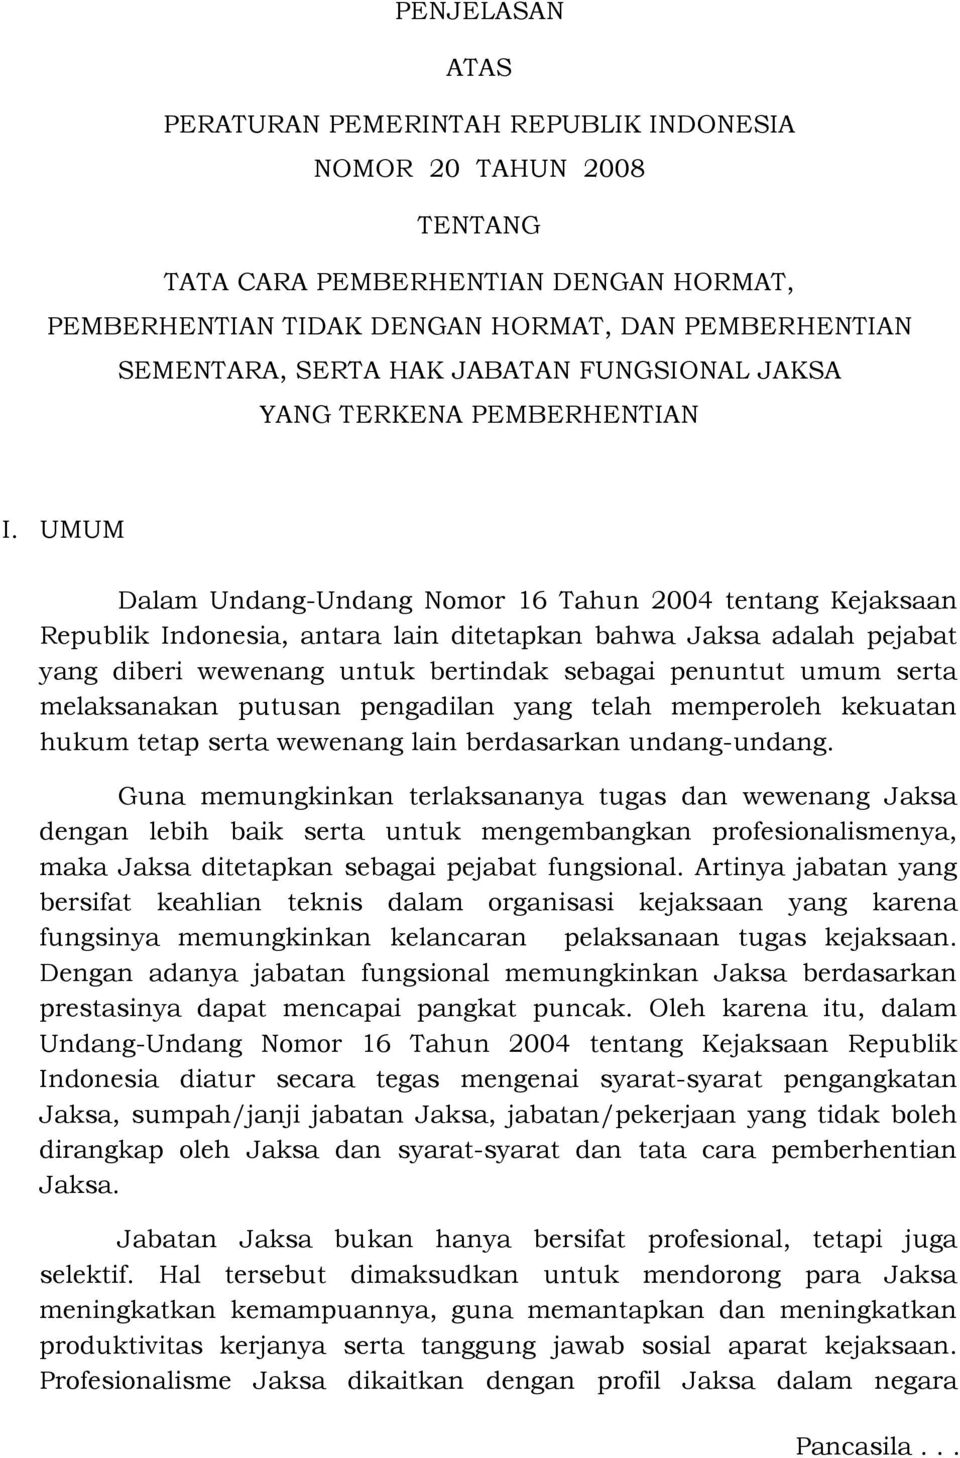 UMUM Dalam Undang-Undang Nomor 16 Tahun 2004 tentang Kejaksaan Republik Indonesia, antara lain ditetapkan bahwa Jaksa adalah pejabat yang diberi wewenang untuk bertindak sebagai penuntut umum serta